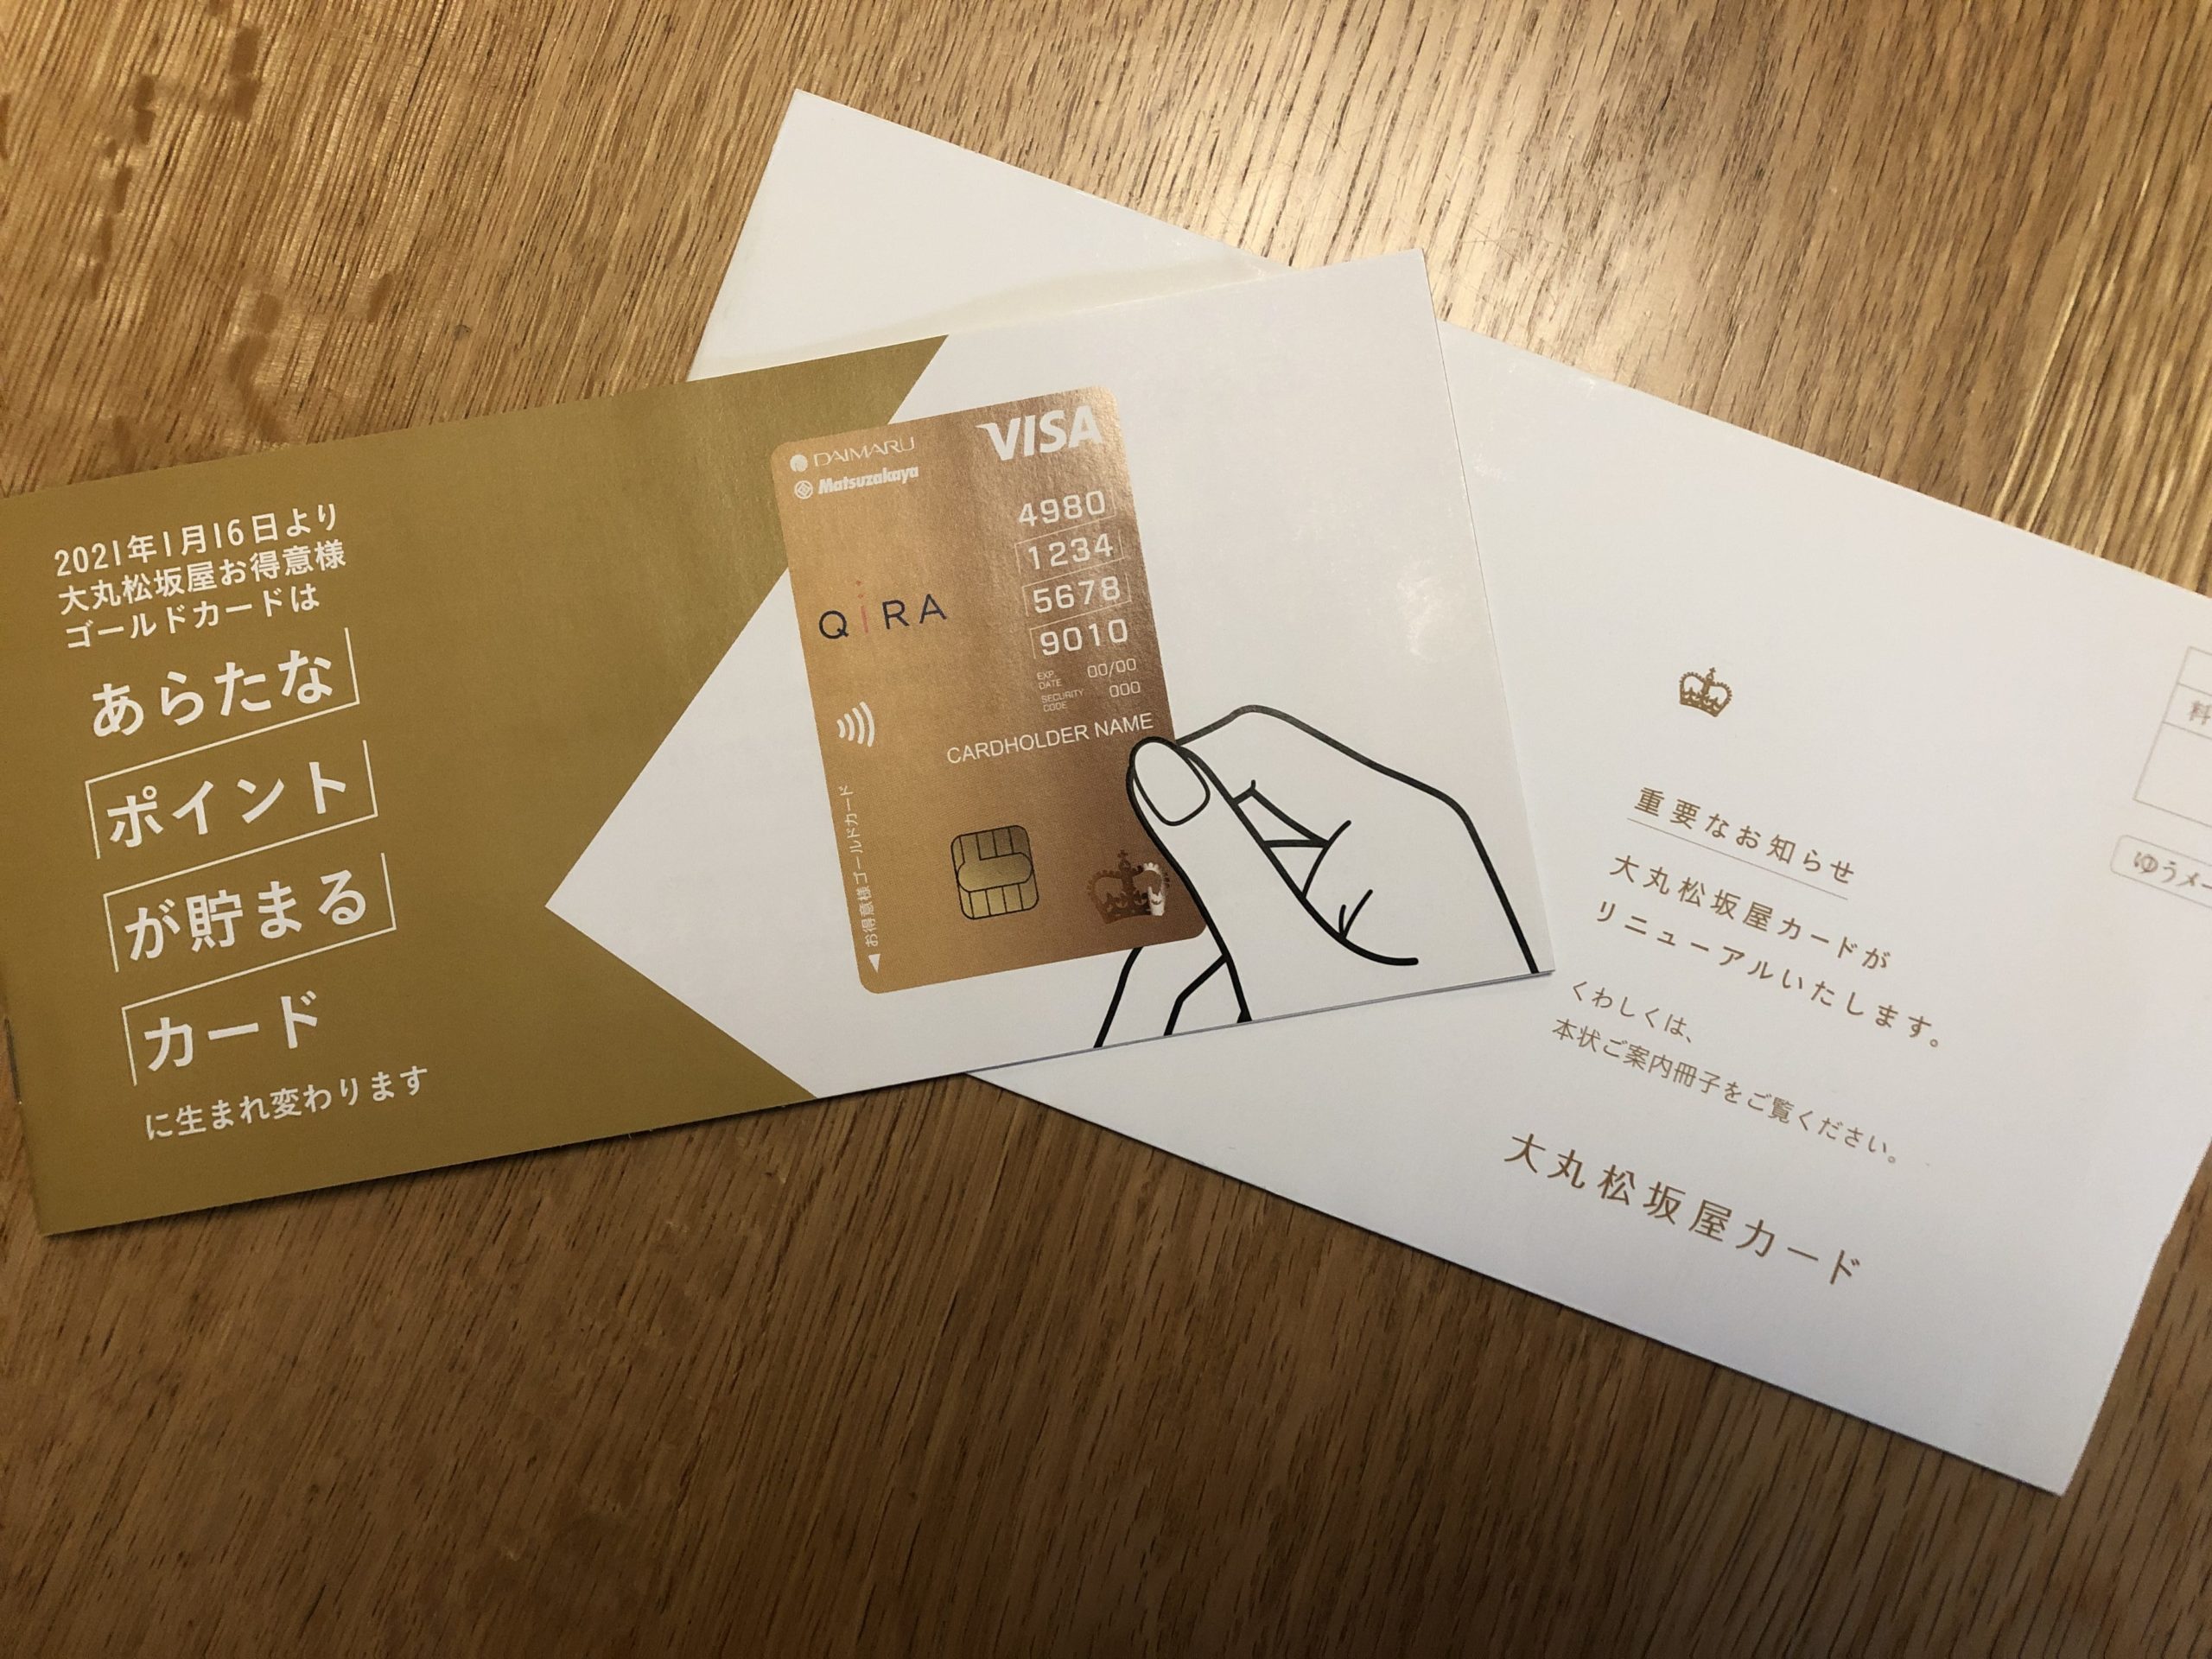 大松松坂屋お得意様ゴールドカード 外商カード がデザイン変更 世紀の大改悪 ふっぴーの初心者マイラー